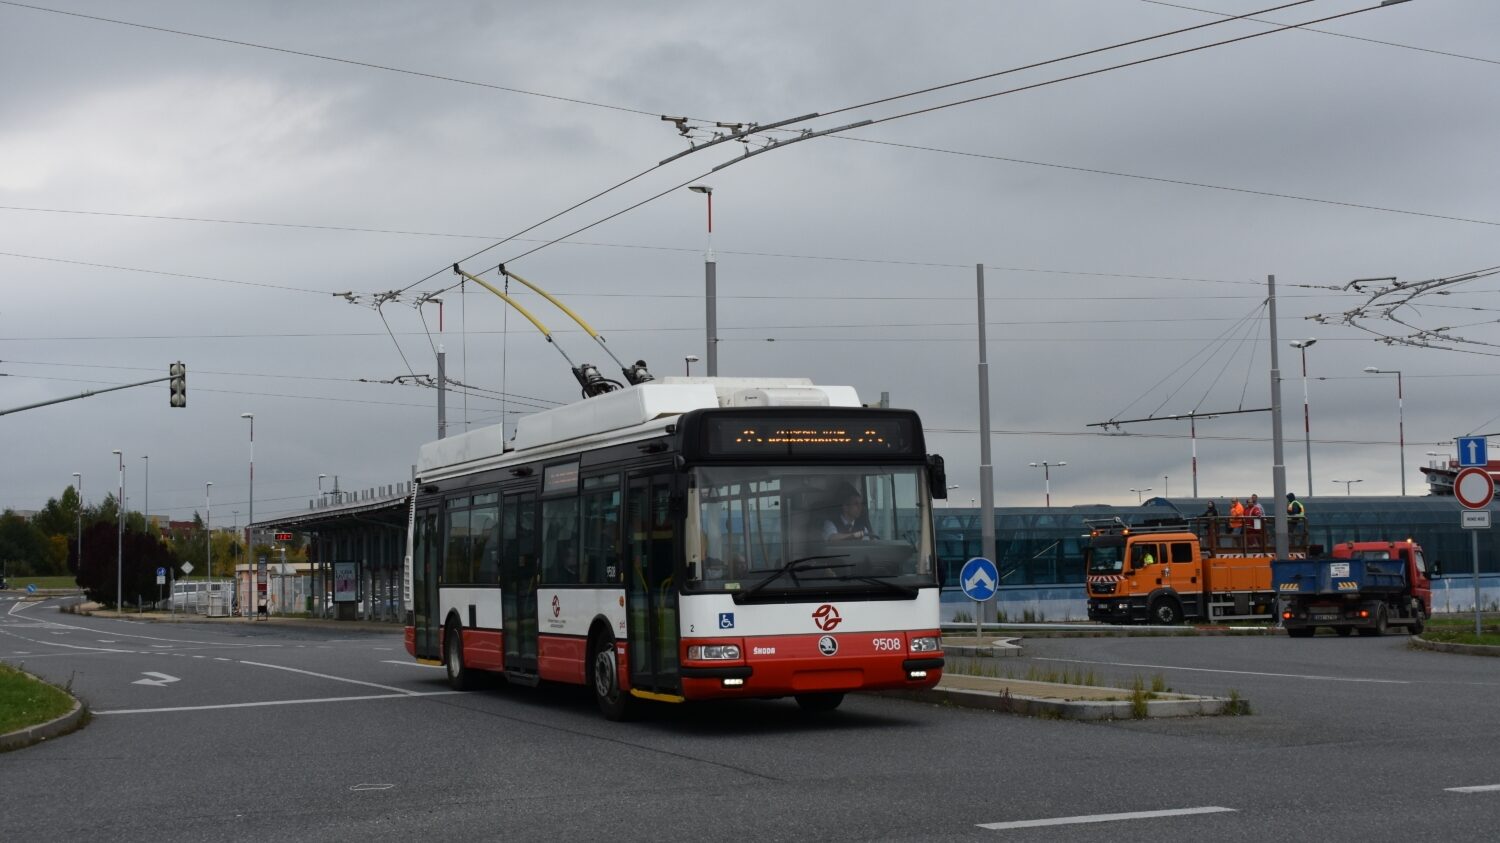 První jízda trolejbusu po nově vybudované trati mezi Letňany a Čakovicemi dne 6. 10. 2022. (foto: Libor Hinčica)